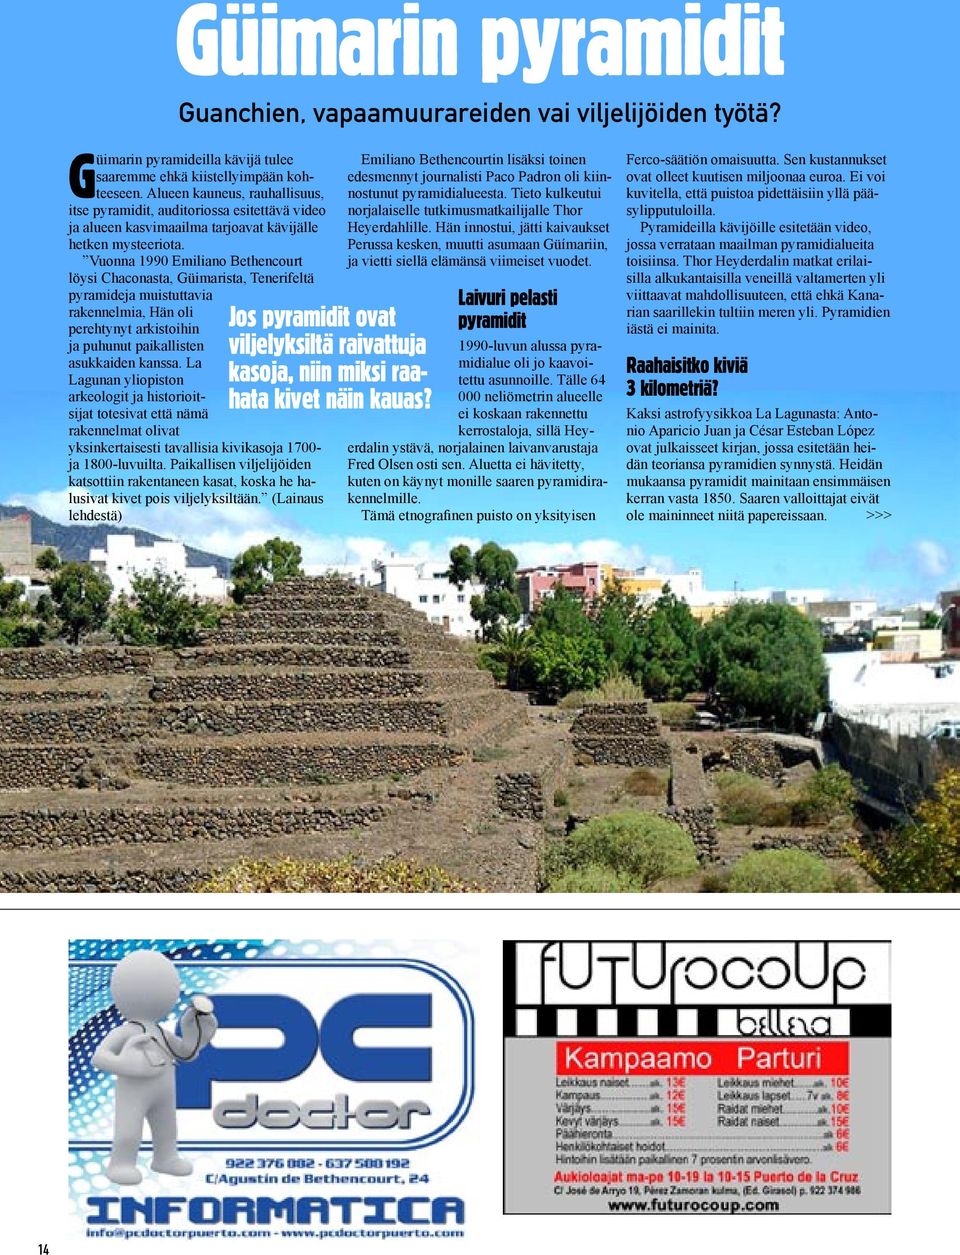 Vuonna 1990 Emiliano Bethencourt löysi Chaconasta, Güimarista, Tenerifeltä pyramideja muistuttavia rakennelmia, Hän oli perehtynyt arkistoihin ja puhunut paikallisten asukkaiden kanssa.